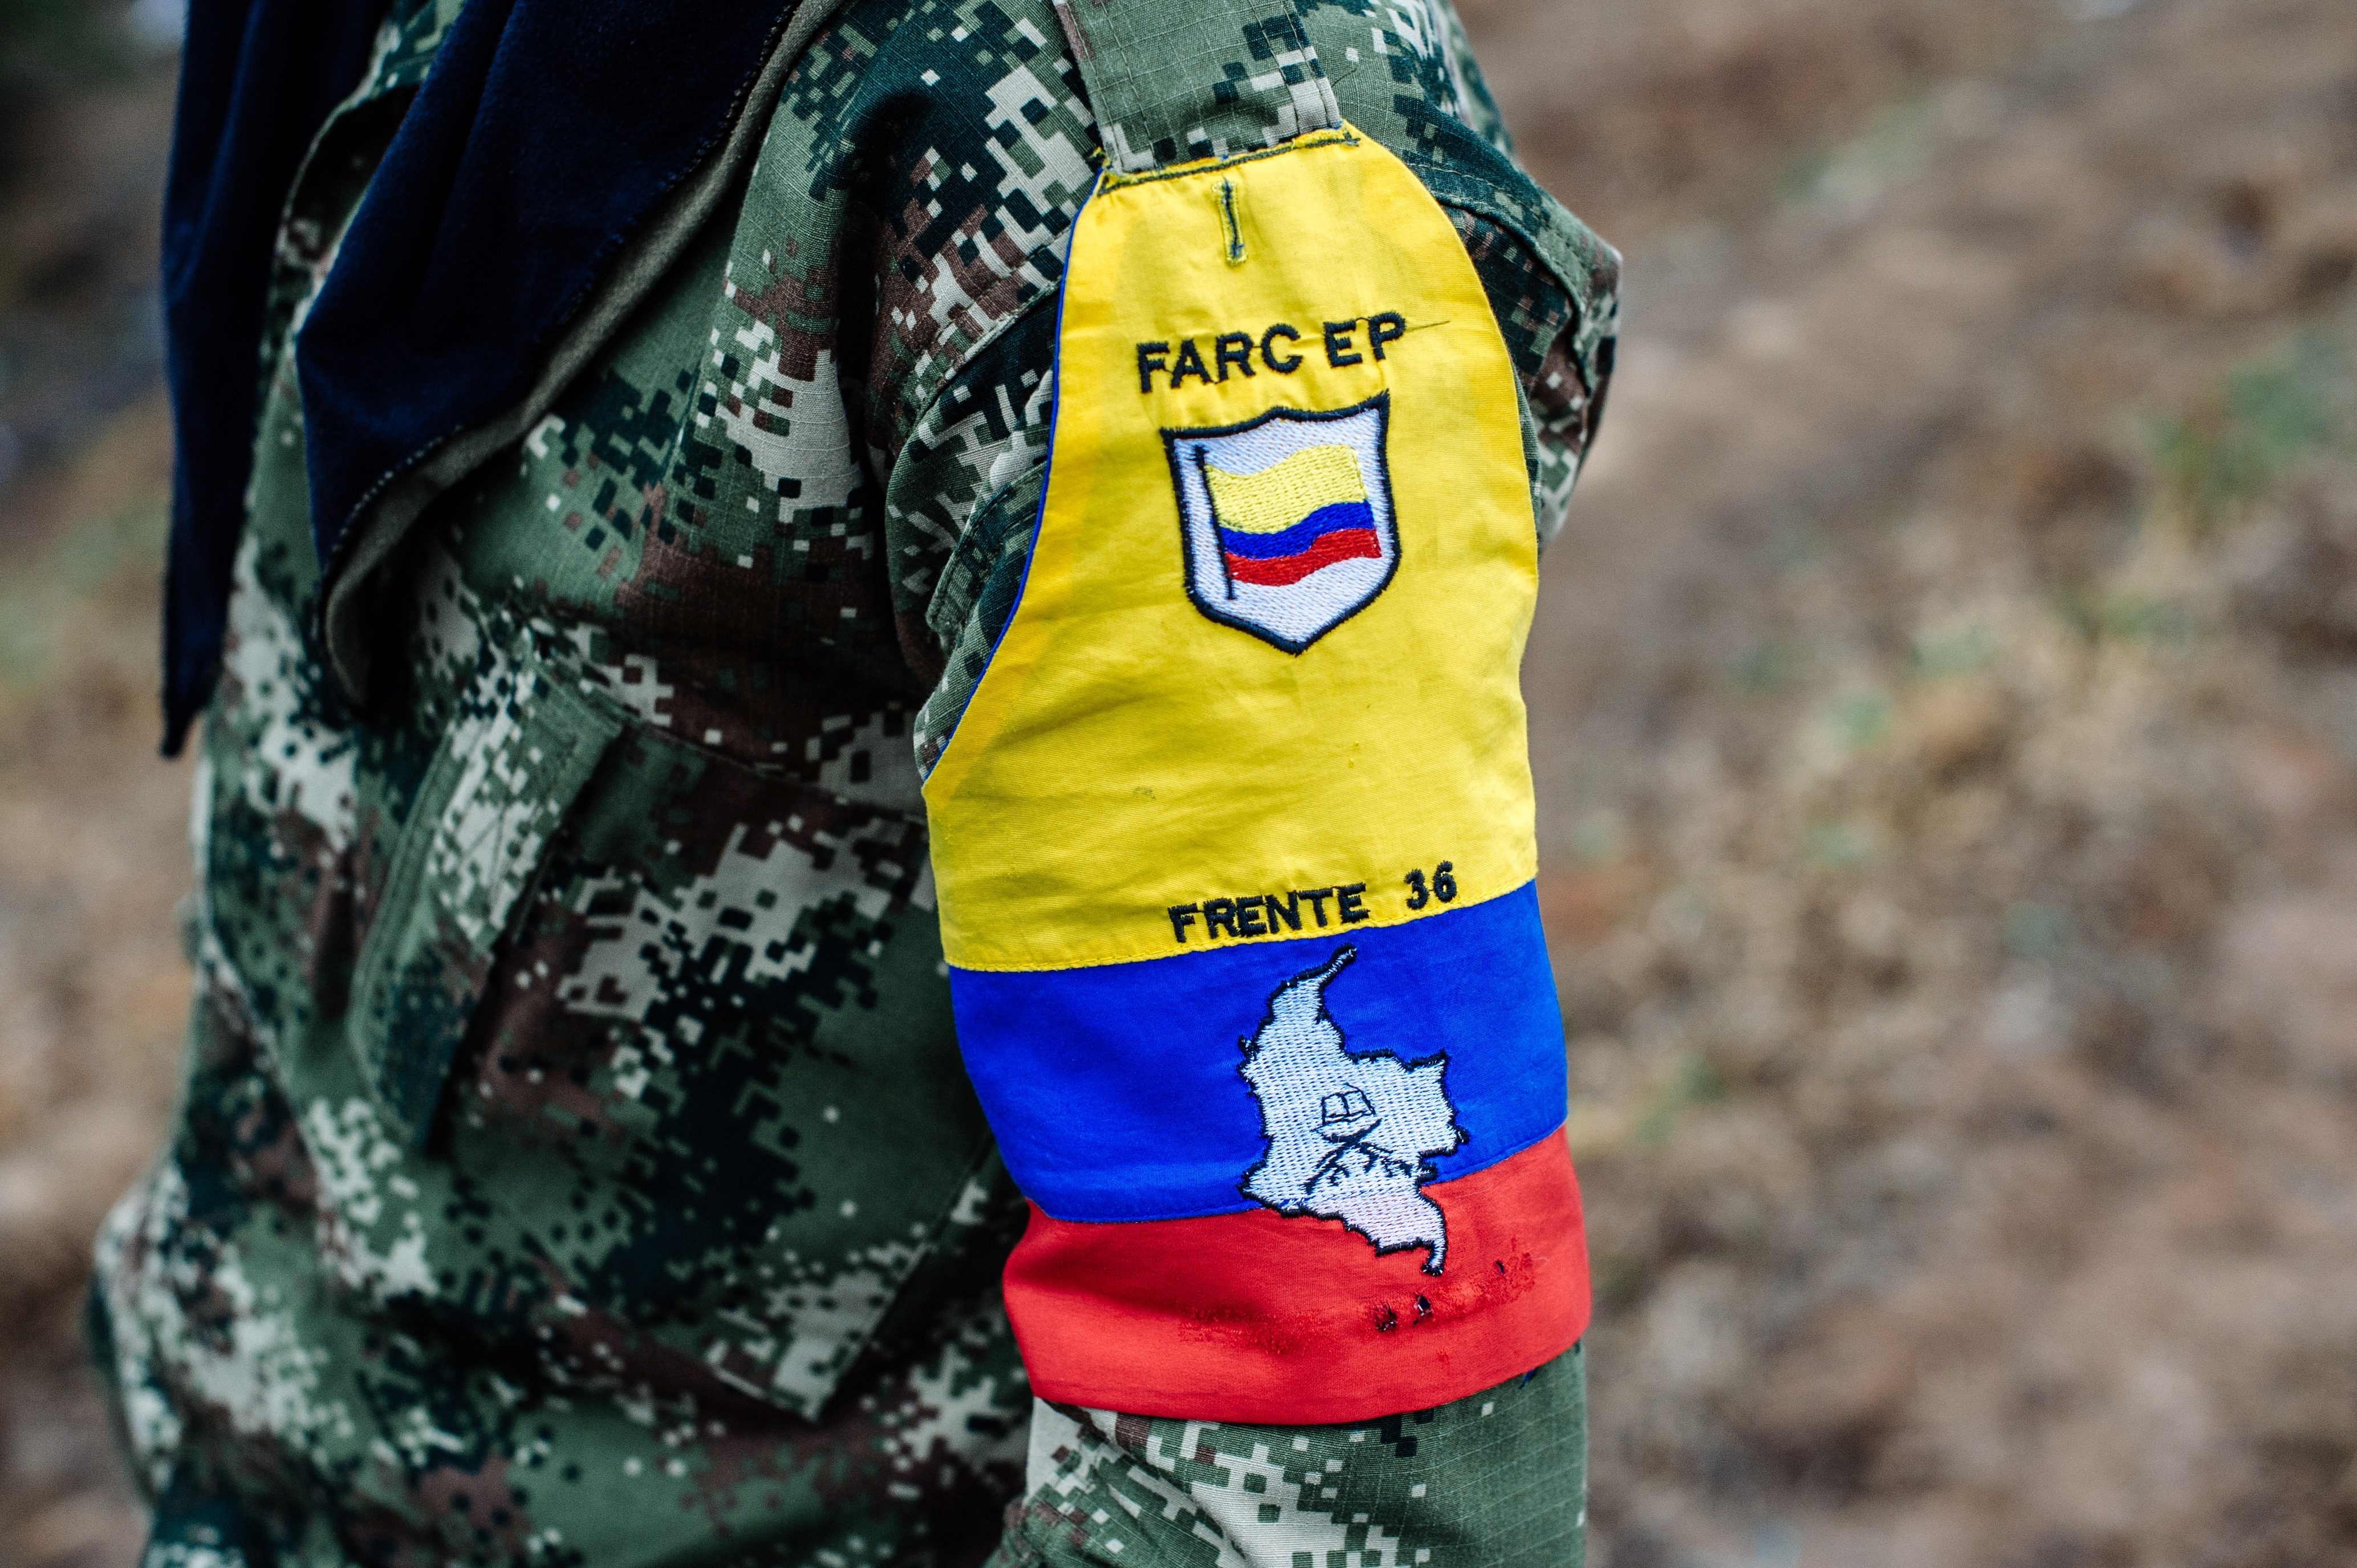 Las comunidades y diversas organizaciones del nororiente de Colombia han salido a marchar pidiendo el cese de hostilidades entre los actores armados y también han formulado propuestas para la transformación del conflicto en la zona.